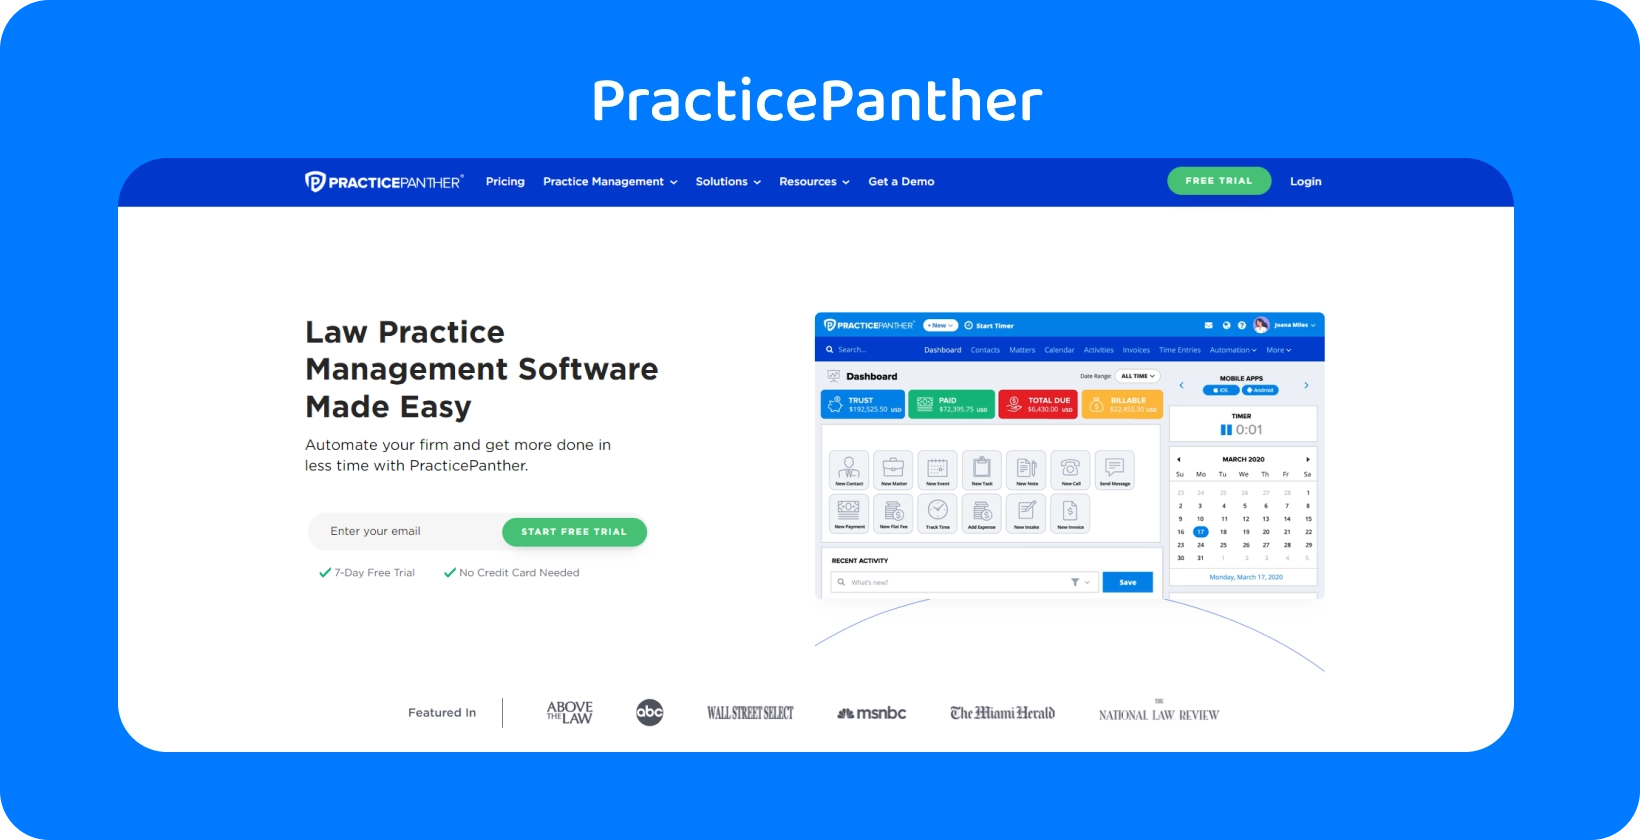 Bảng điều khiển của PracticePanther, trưng bày các công cụ để quản lý hành nghề luật sư.